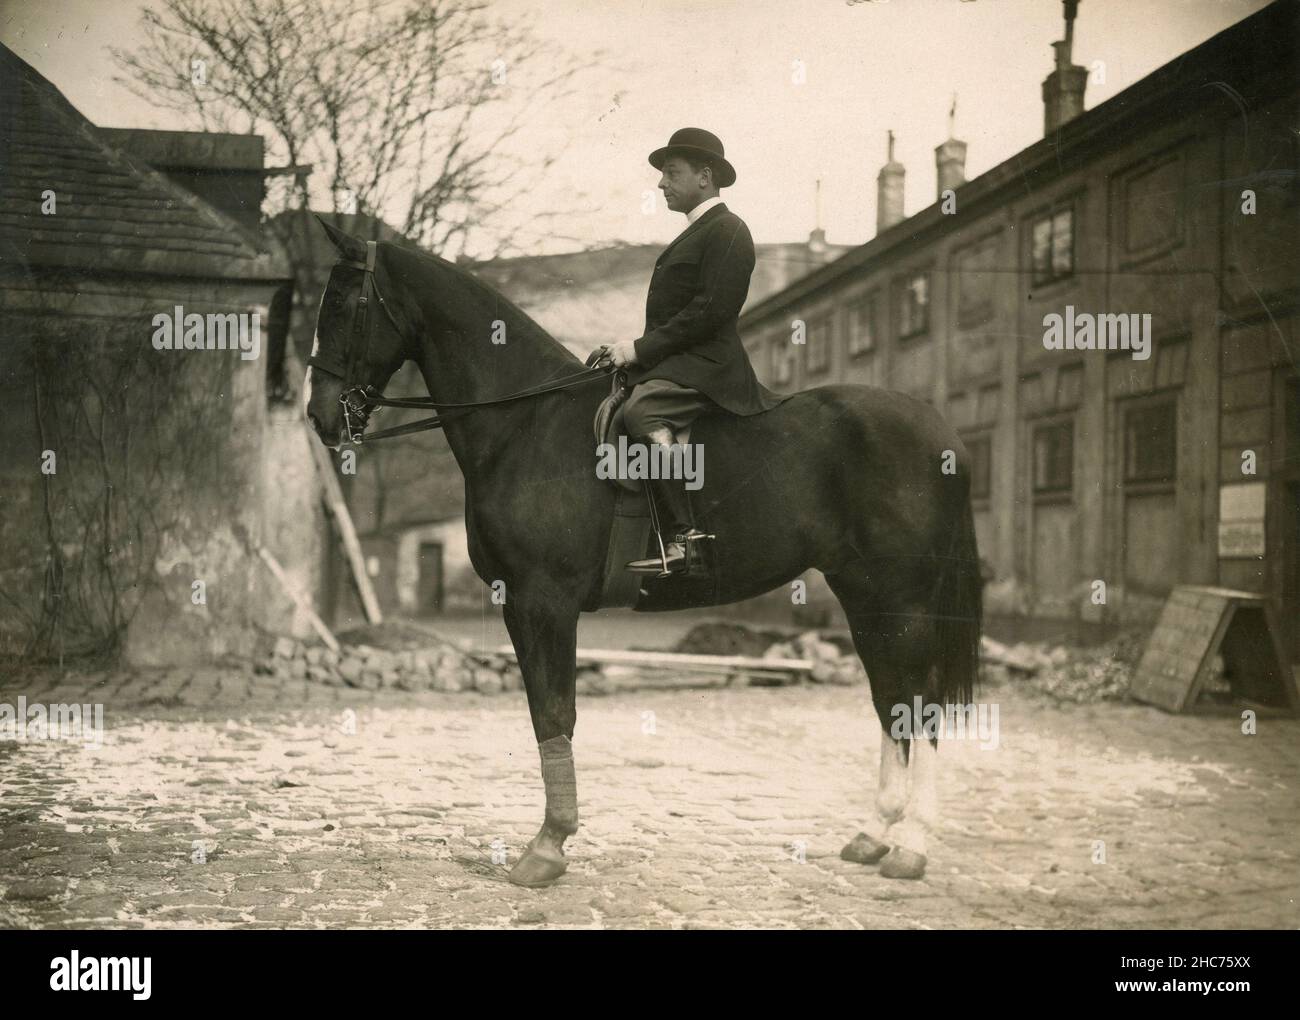 Man riding a horse, Austria 1930s Stock Photo